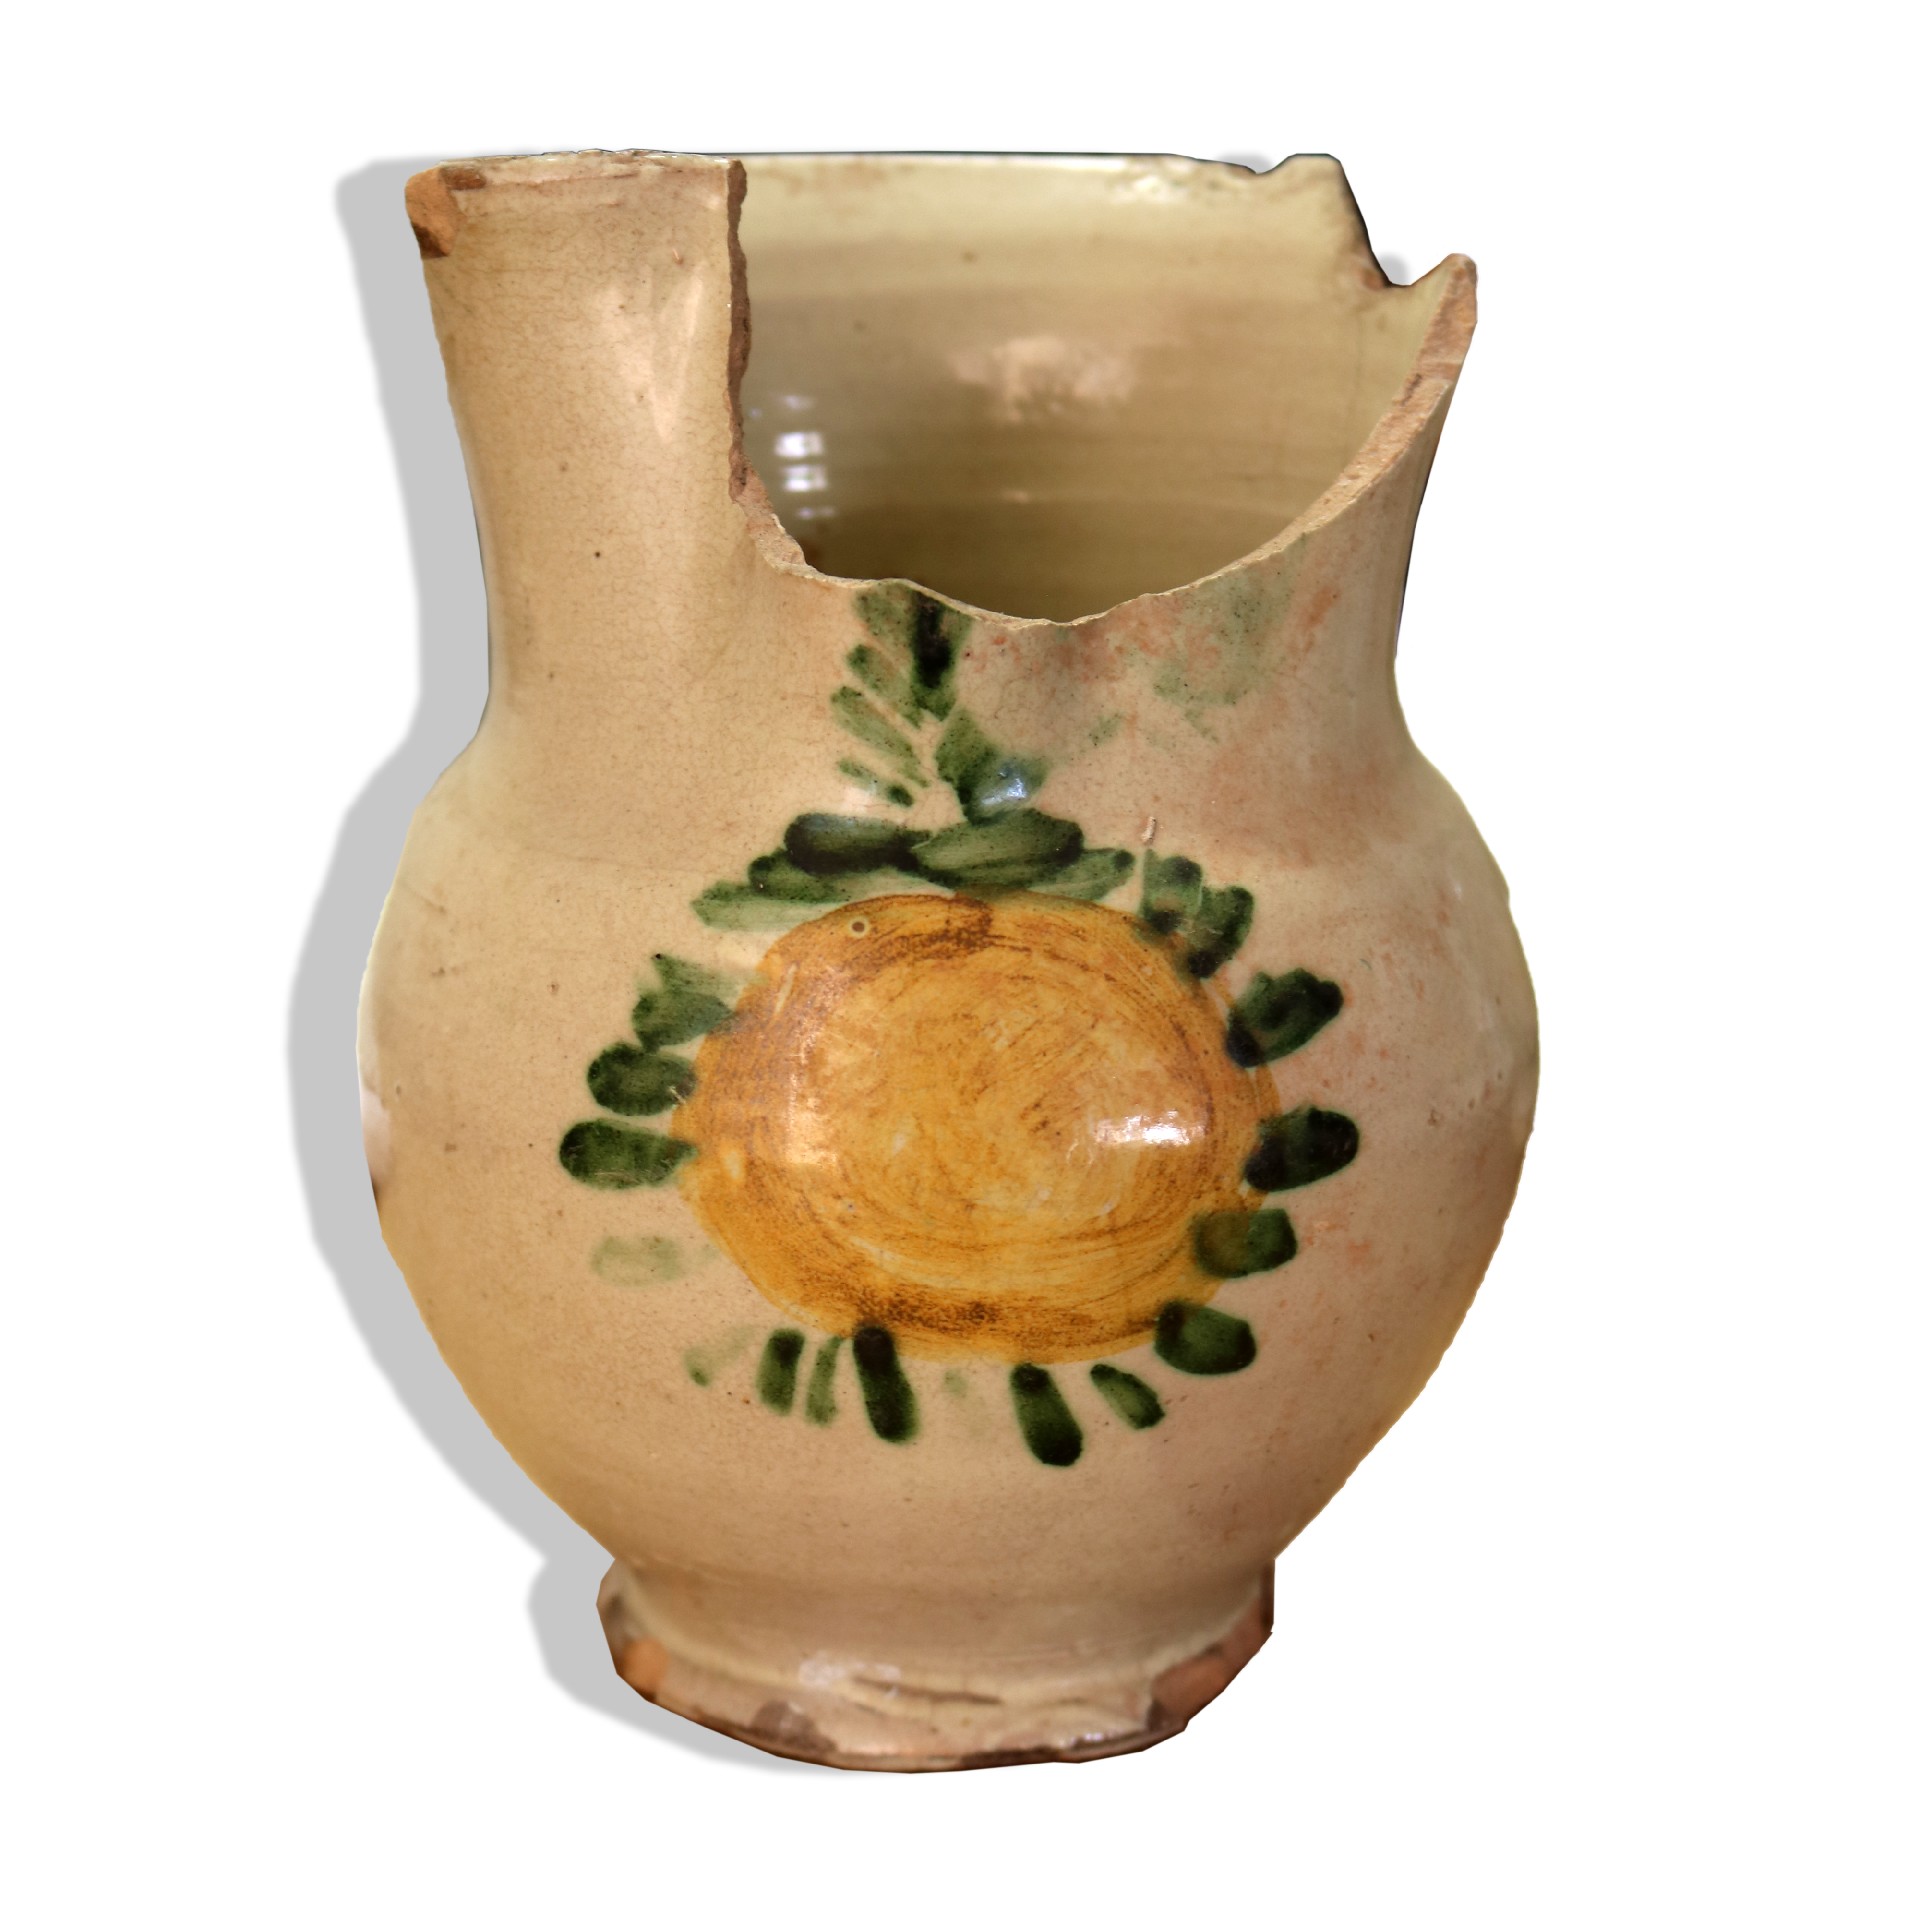 Antico boccale in maiolica - Ceramiche - Oggettistica - Prodotti - Antichità Fiorillo